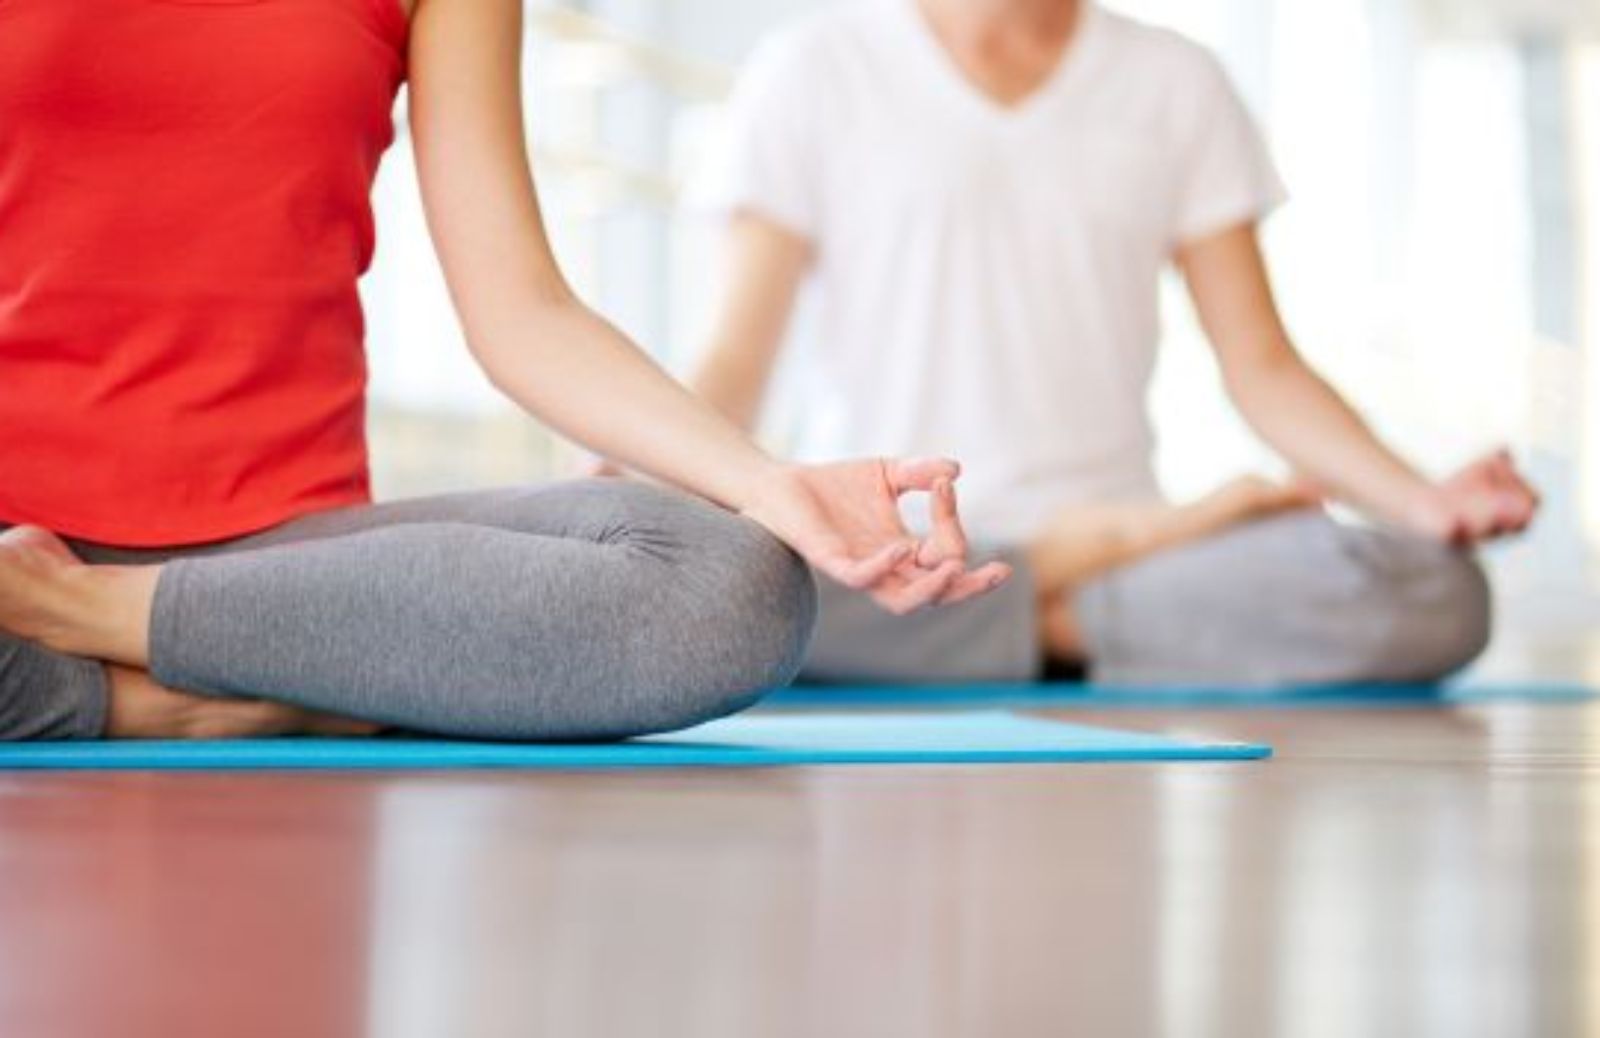 Fare hot yoga fa male? Le ricerche dicono di no